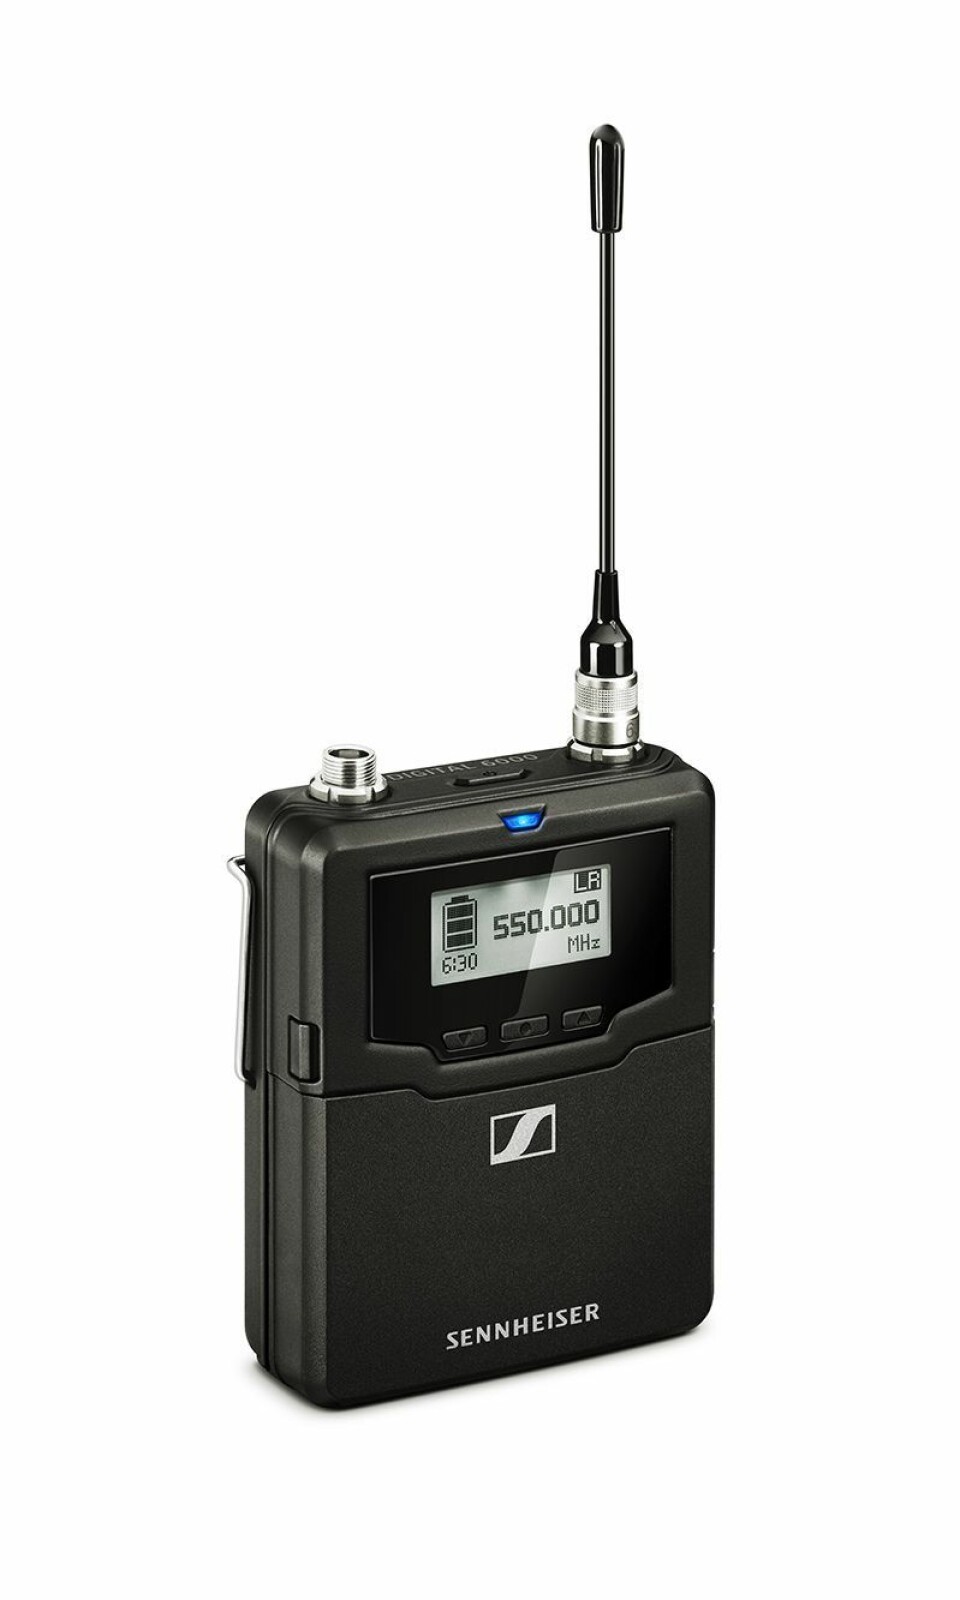 SK 6000 bodypack transmitter er det 74 stykker av i bruk under ESC. Foto: Sennheiser